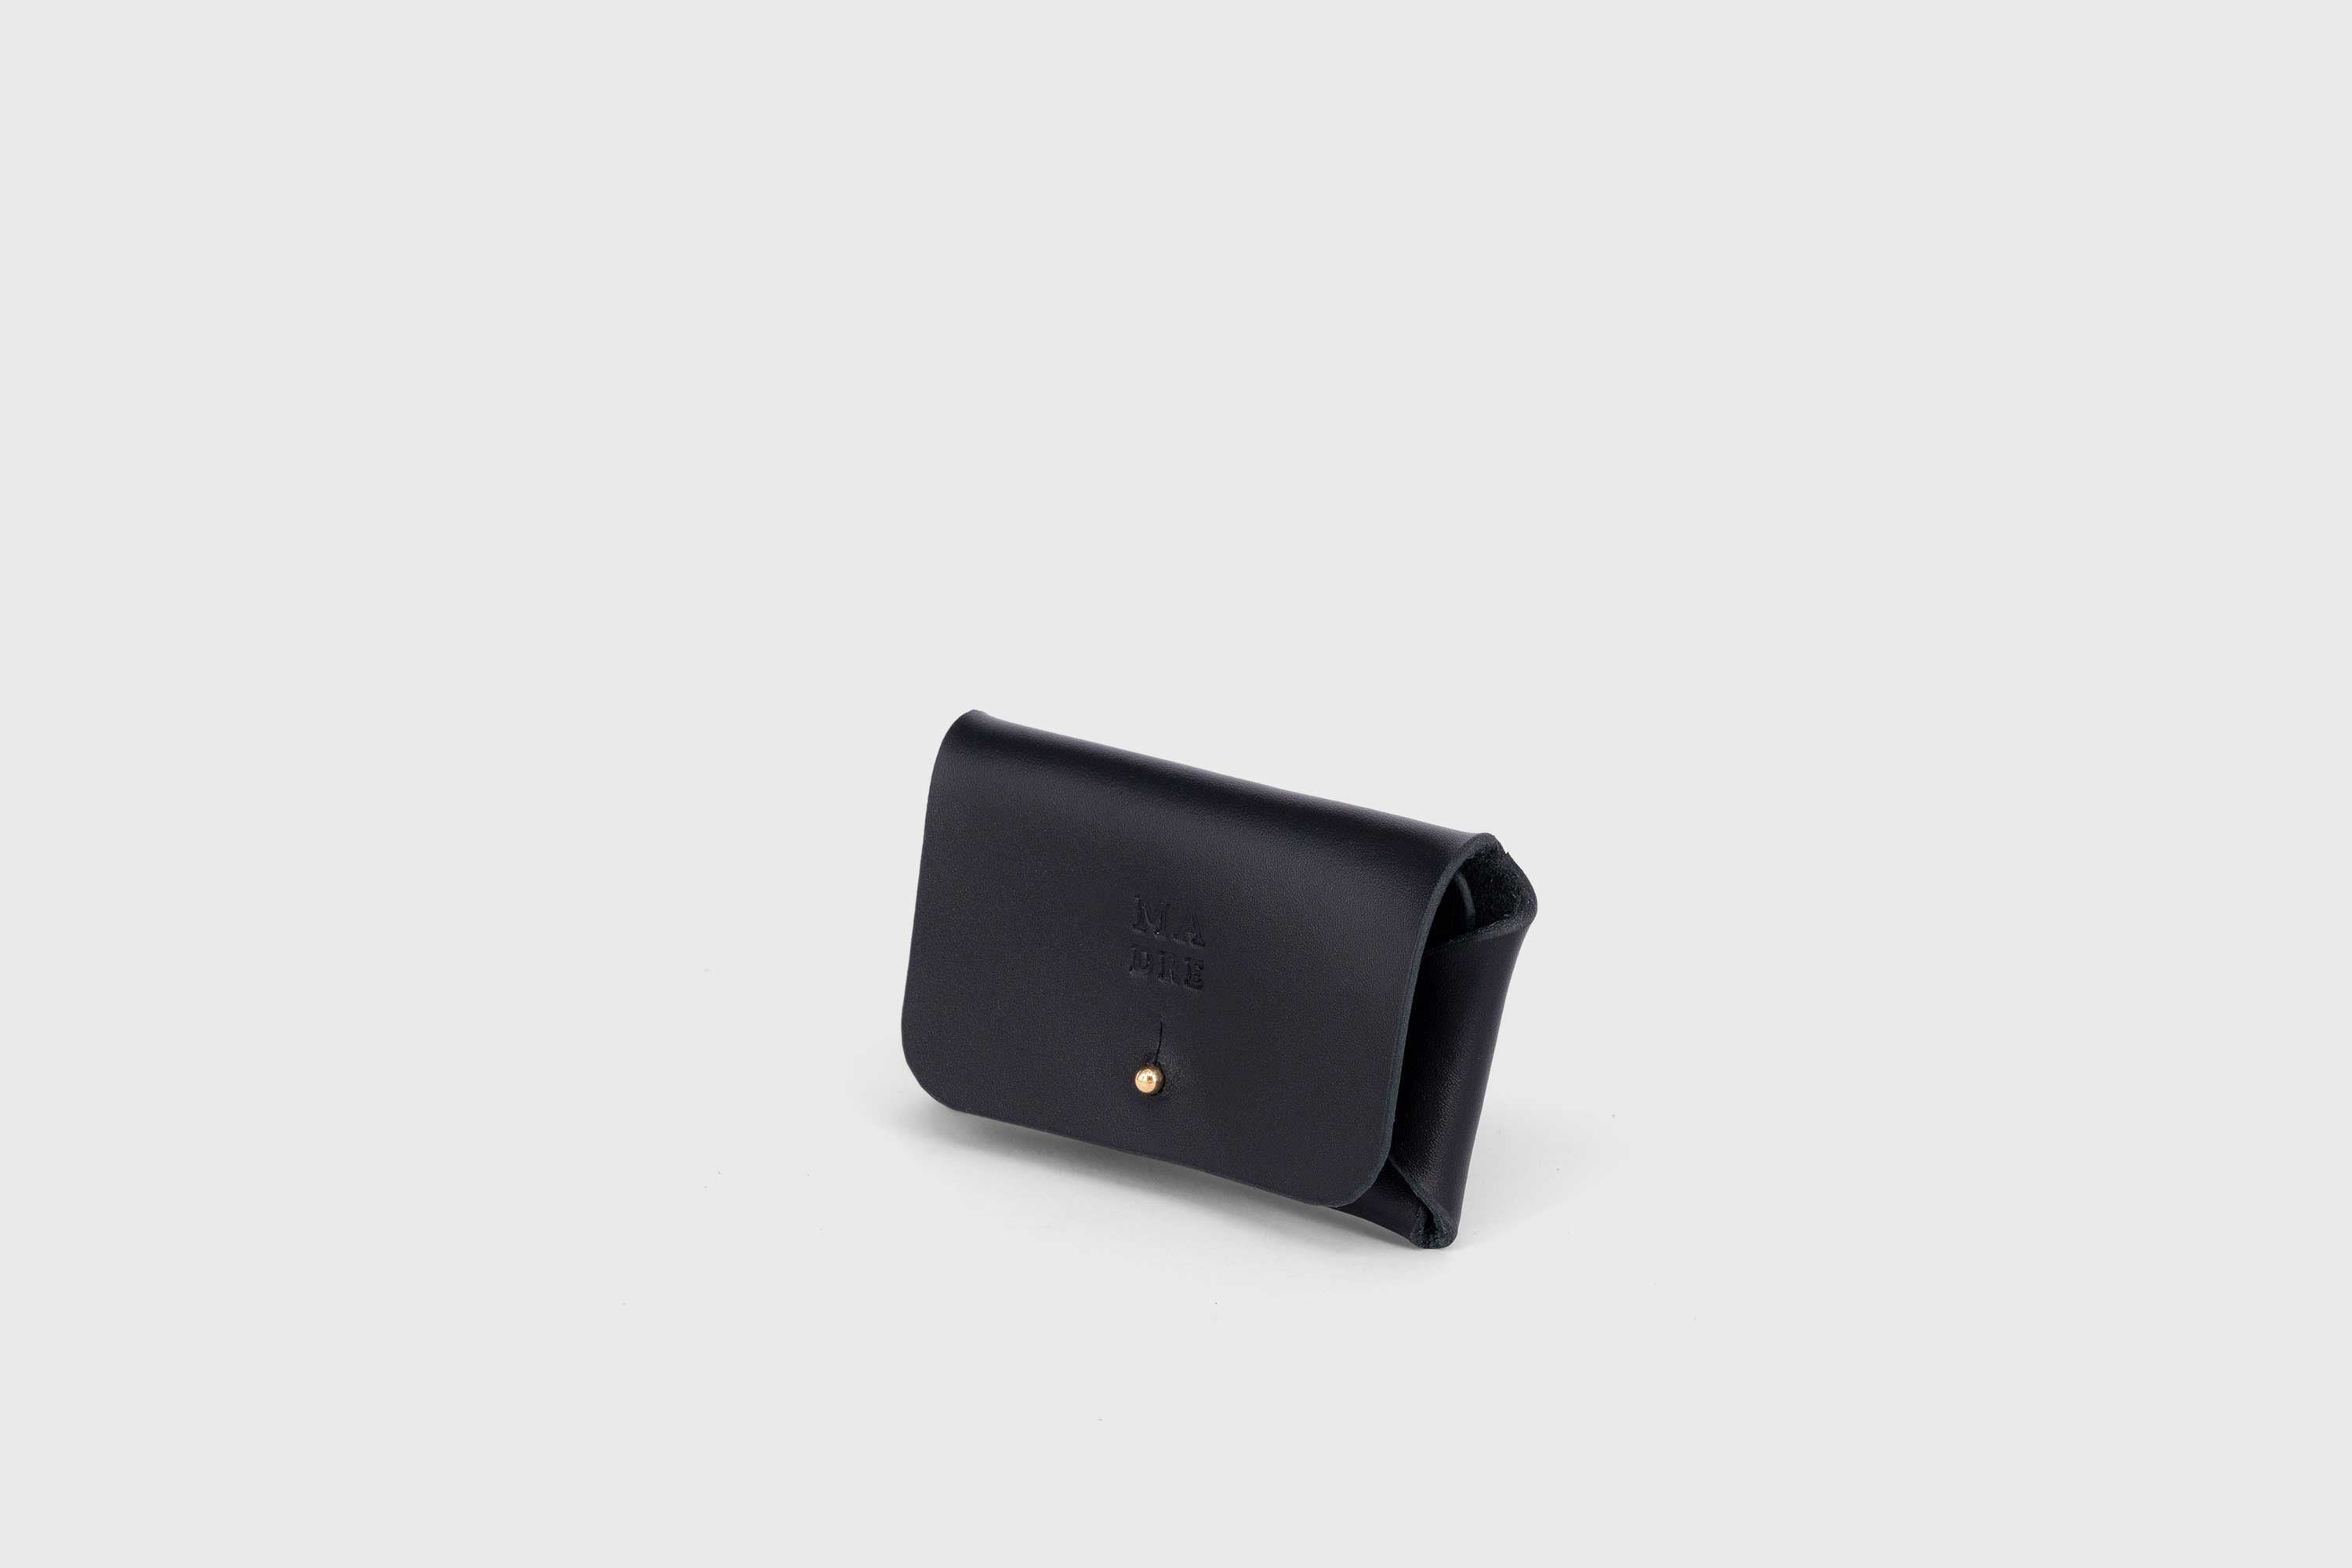 Leather wallet cardholder horizontal design black color minimalist design atelier madre manuel dreesmann barcelona